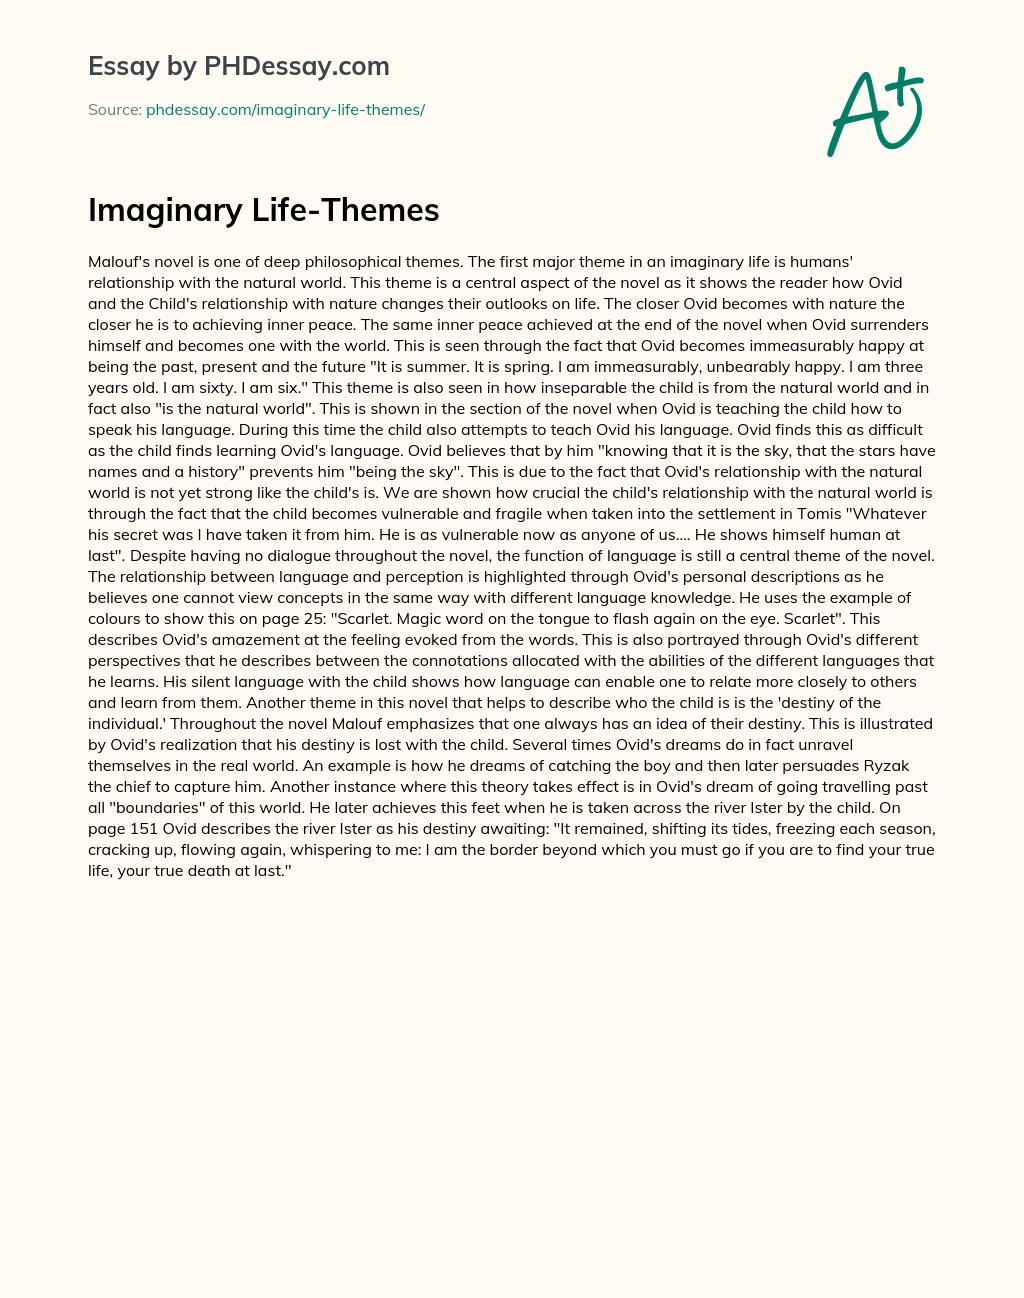 Imaginary Life-Themes essay